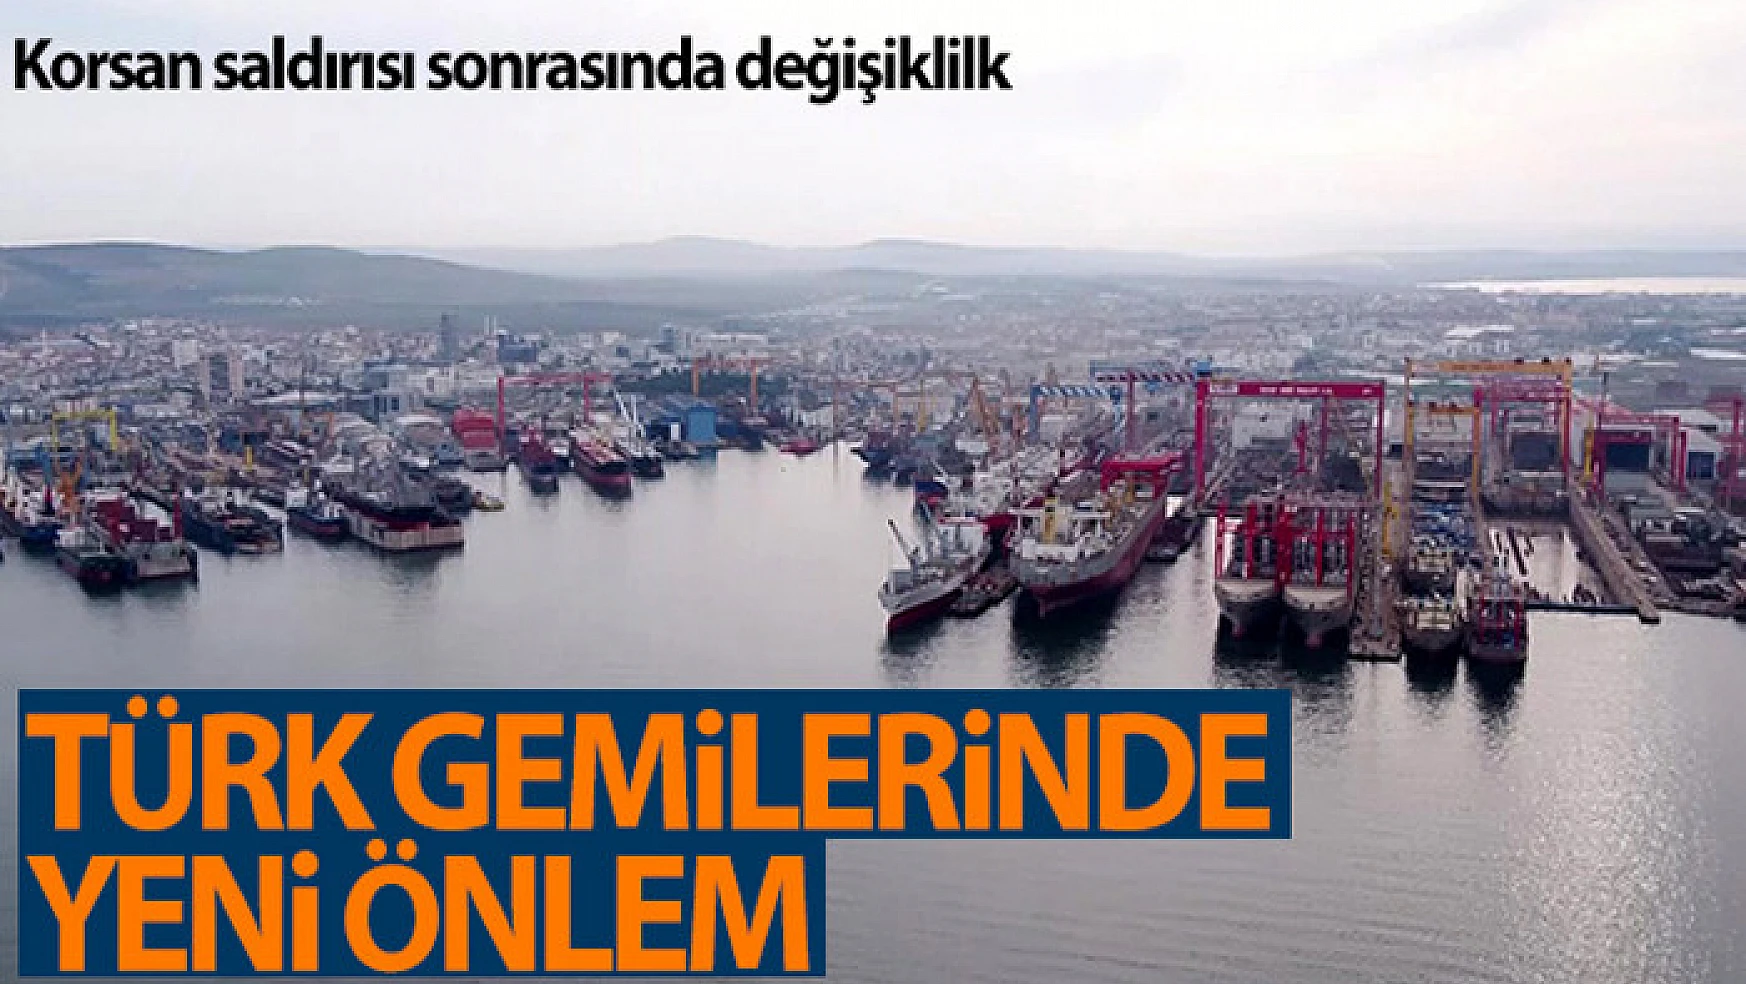 Türk gemisine korsan saldırısı sonrasında yük gemilerinde termal kamera önlemi